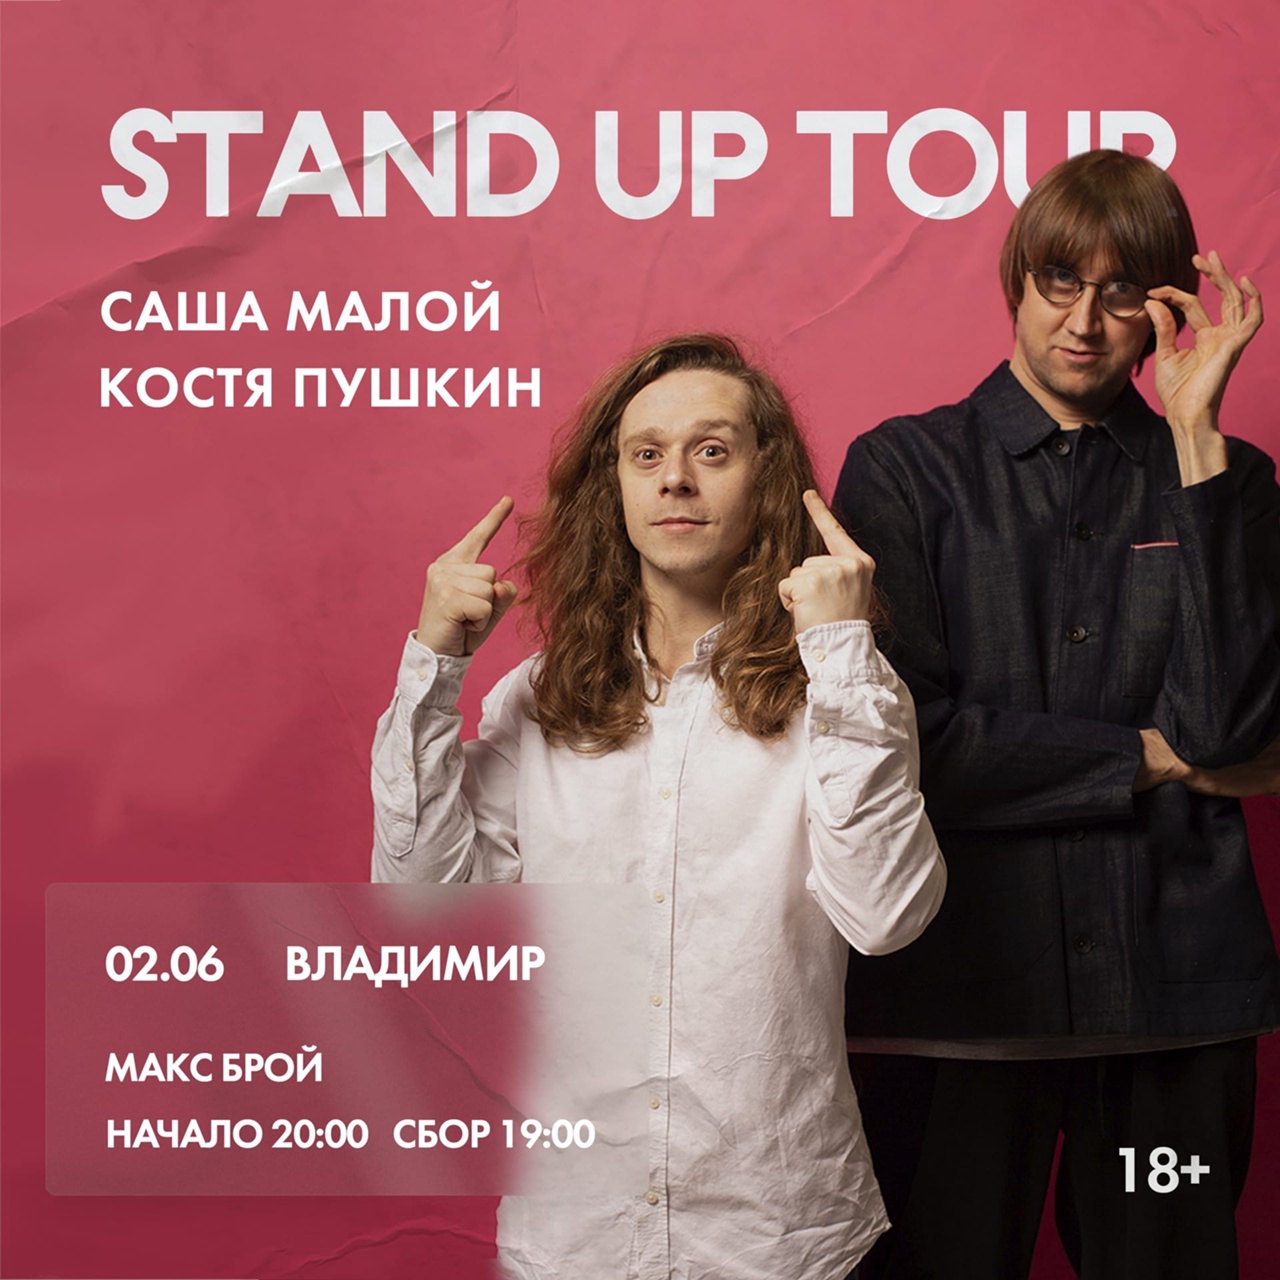 Команда из лучших DJ и МС Нижнего Новгорода устроят в областном центре жаркую тусовку для тех, кому уже исполнилось 18 лет. А комики Stand Up Club #1 — яркое шоу для ценителей качественного юмора. Мы собрали для вас все самые крутые события этой недели!